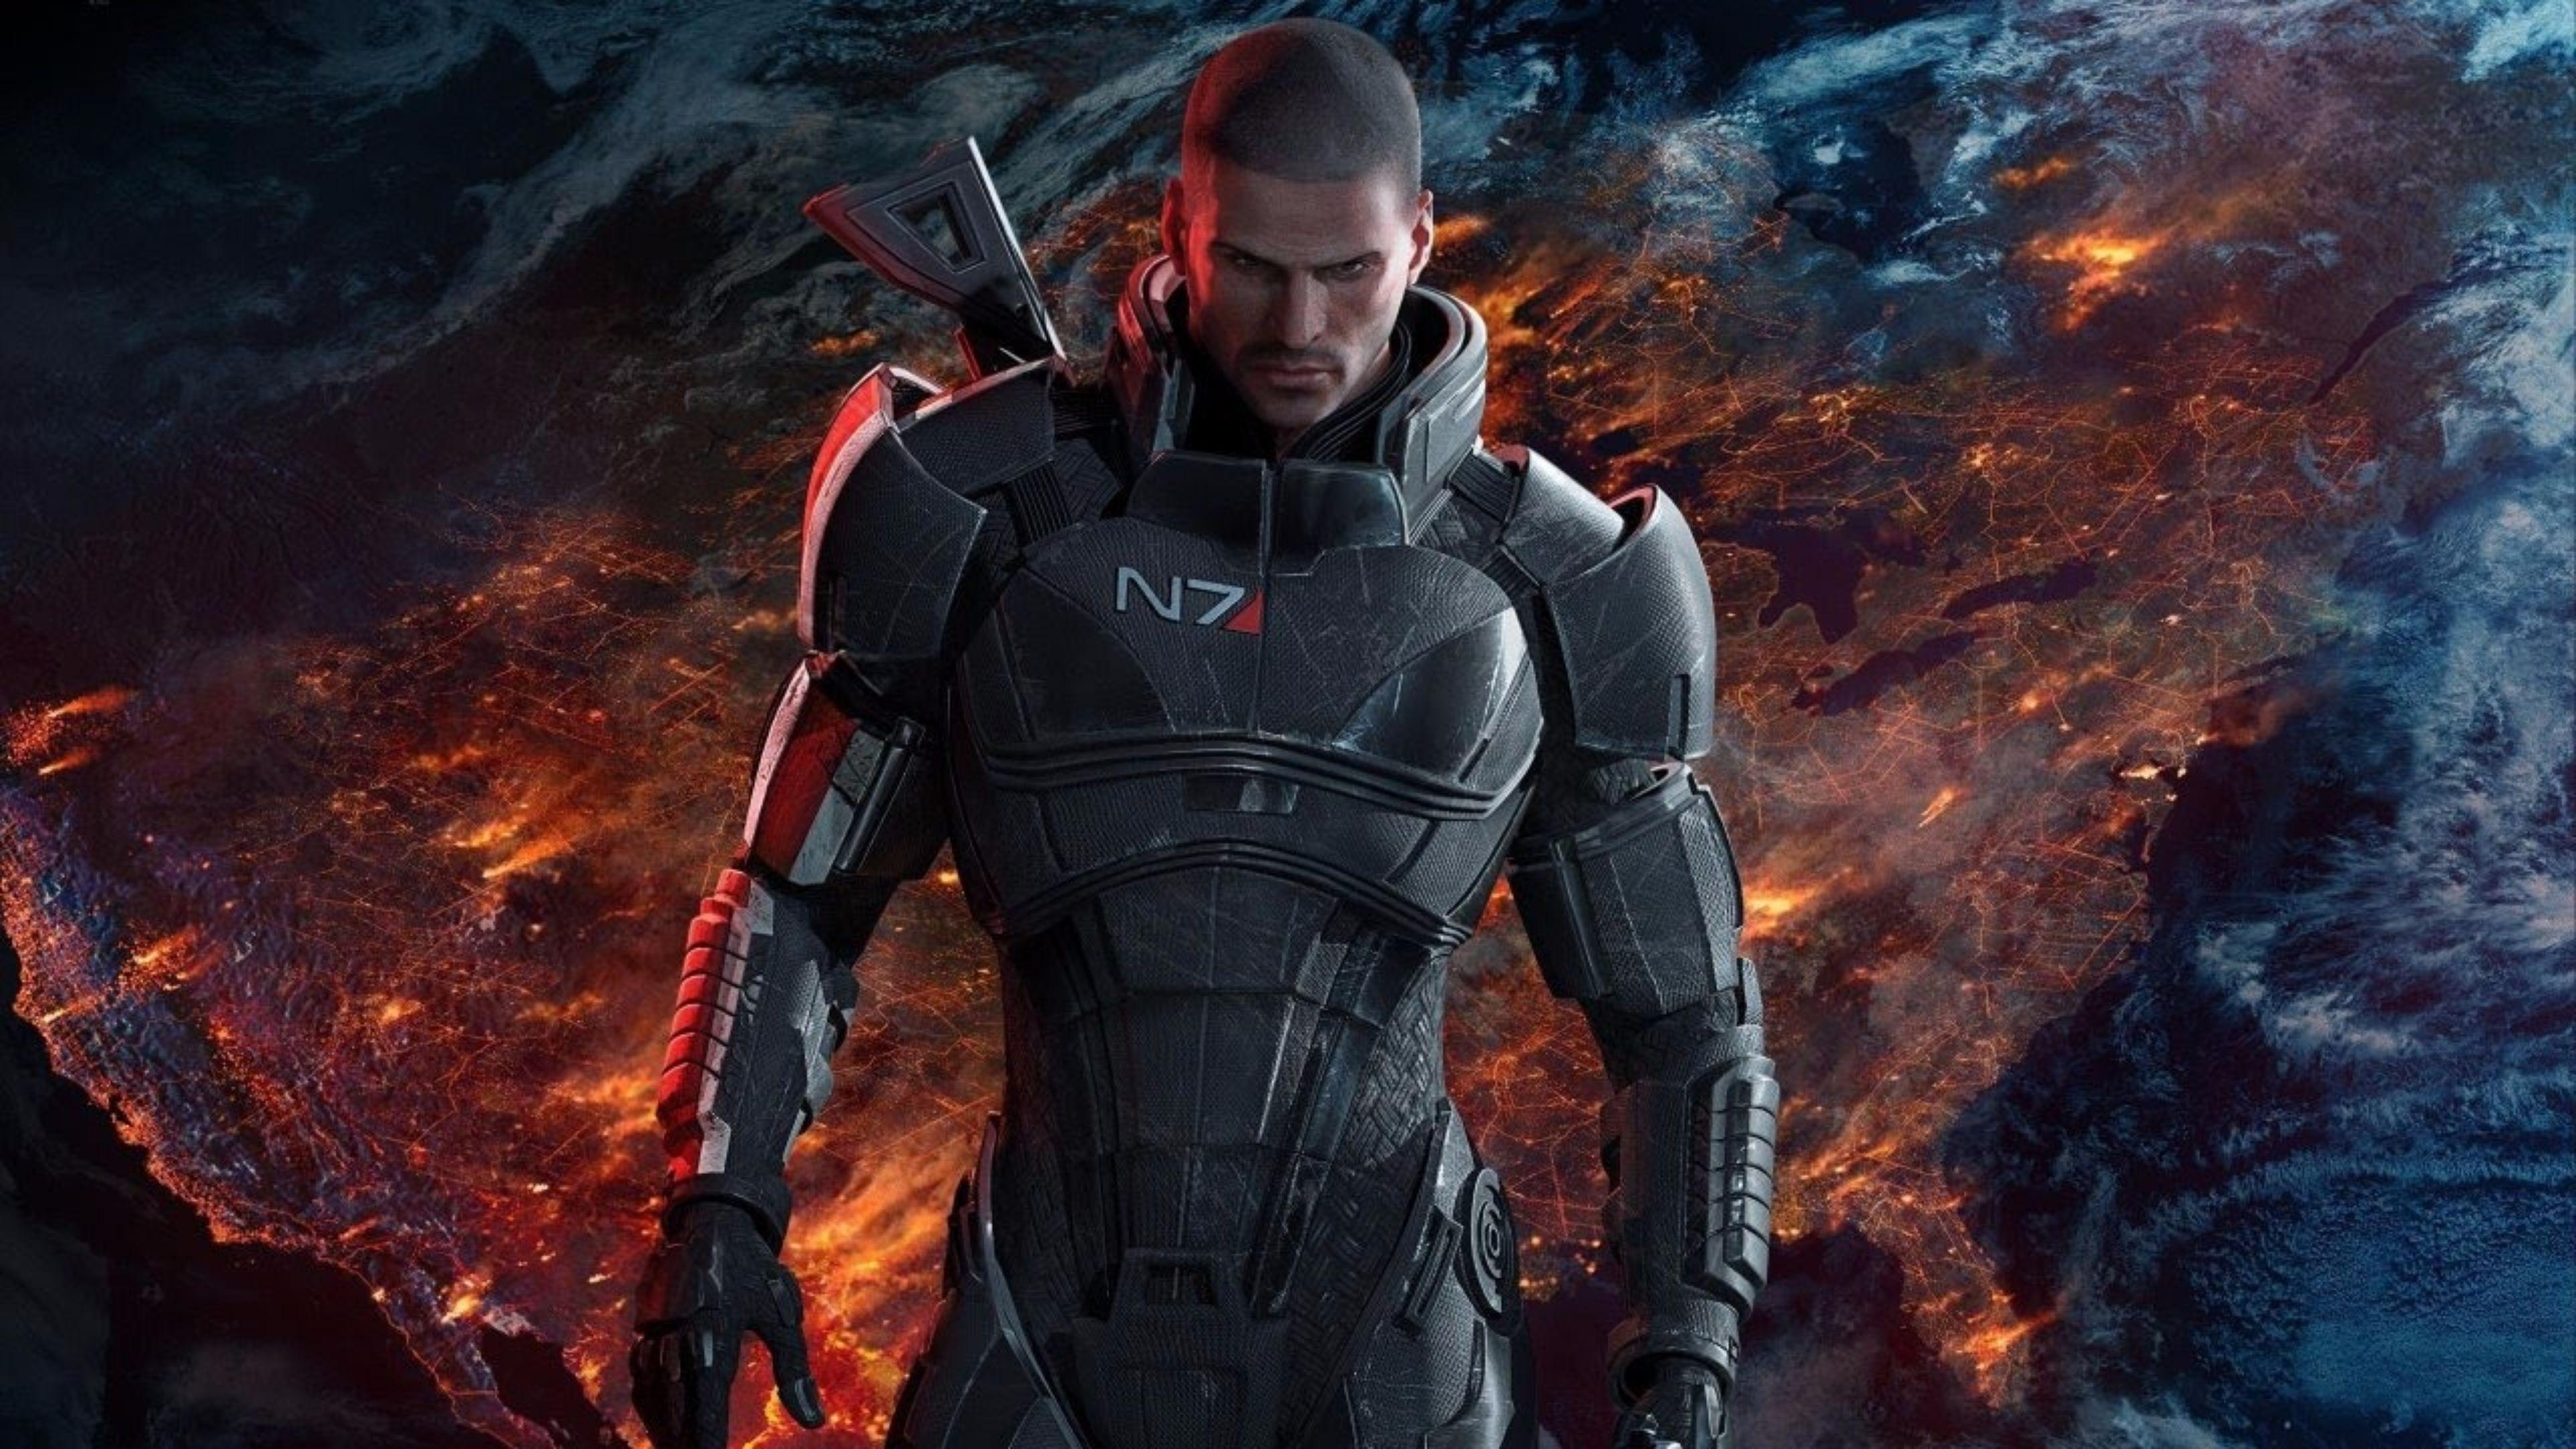 Mass Effect 4k Wallpapers Top Free Mass Effect 4k Backgrounds Wallpaperaccess 